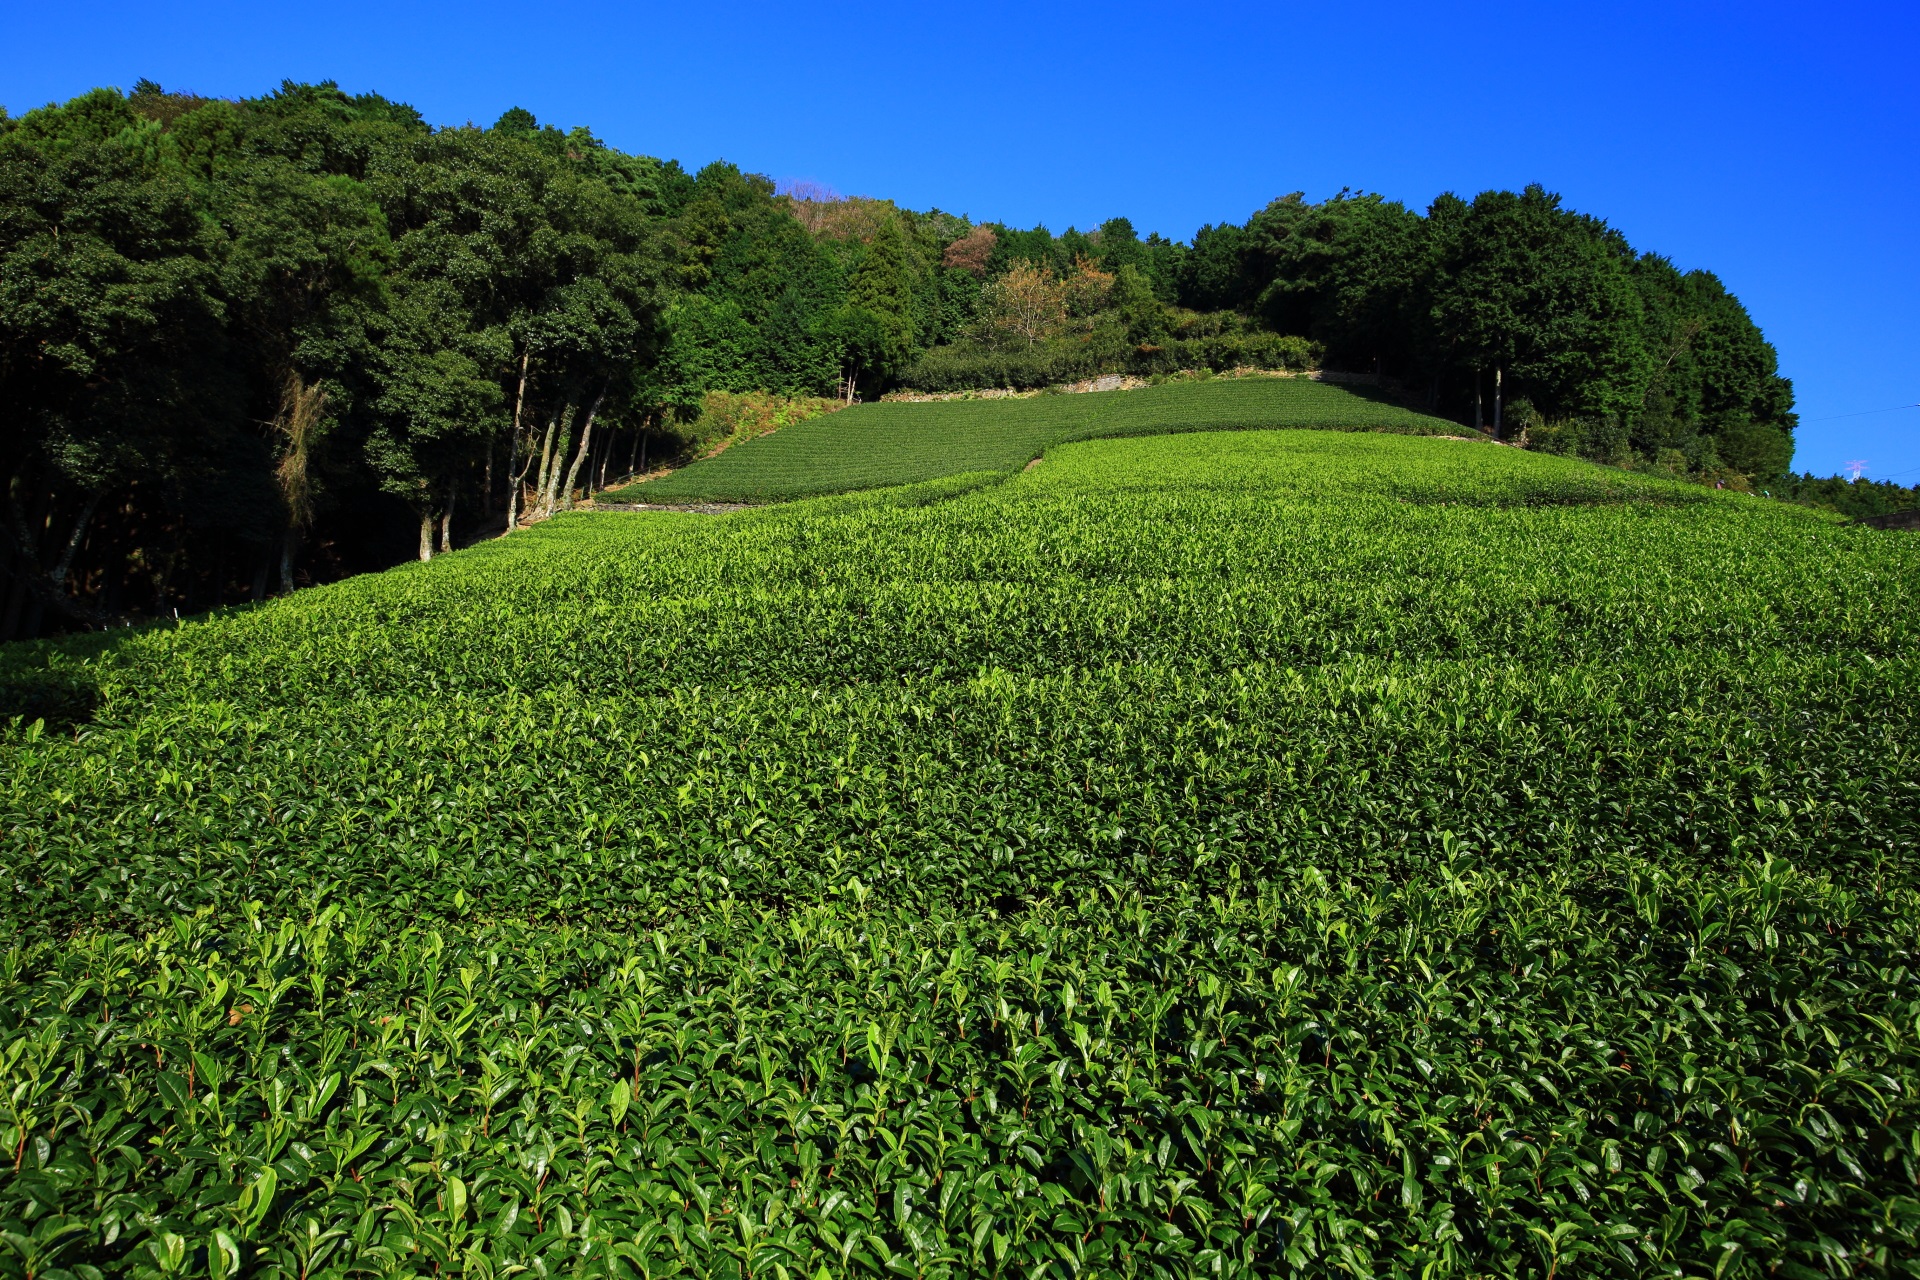 鷲峰山（じゅうぶさん）という山の斜面から麓にかけてある和束町の原山地区の茶畑